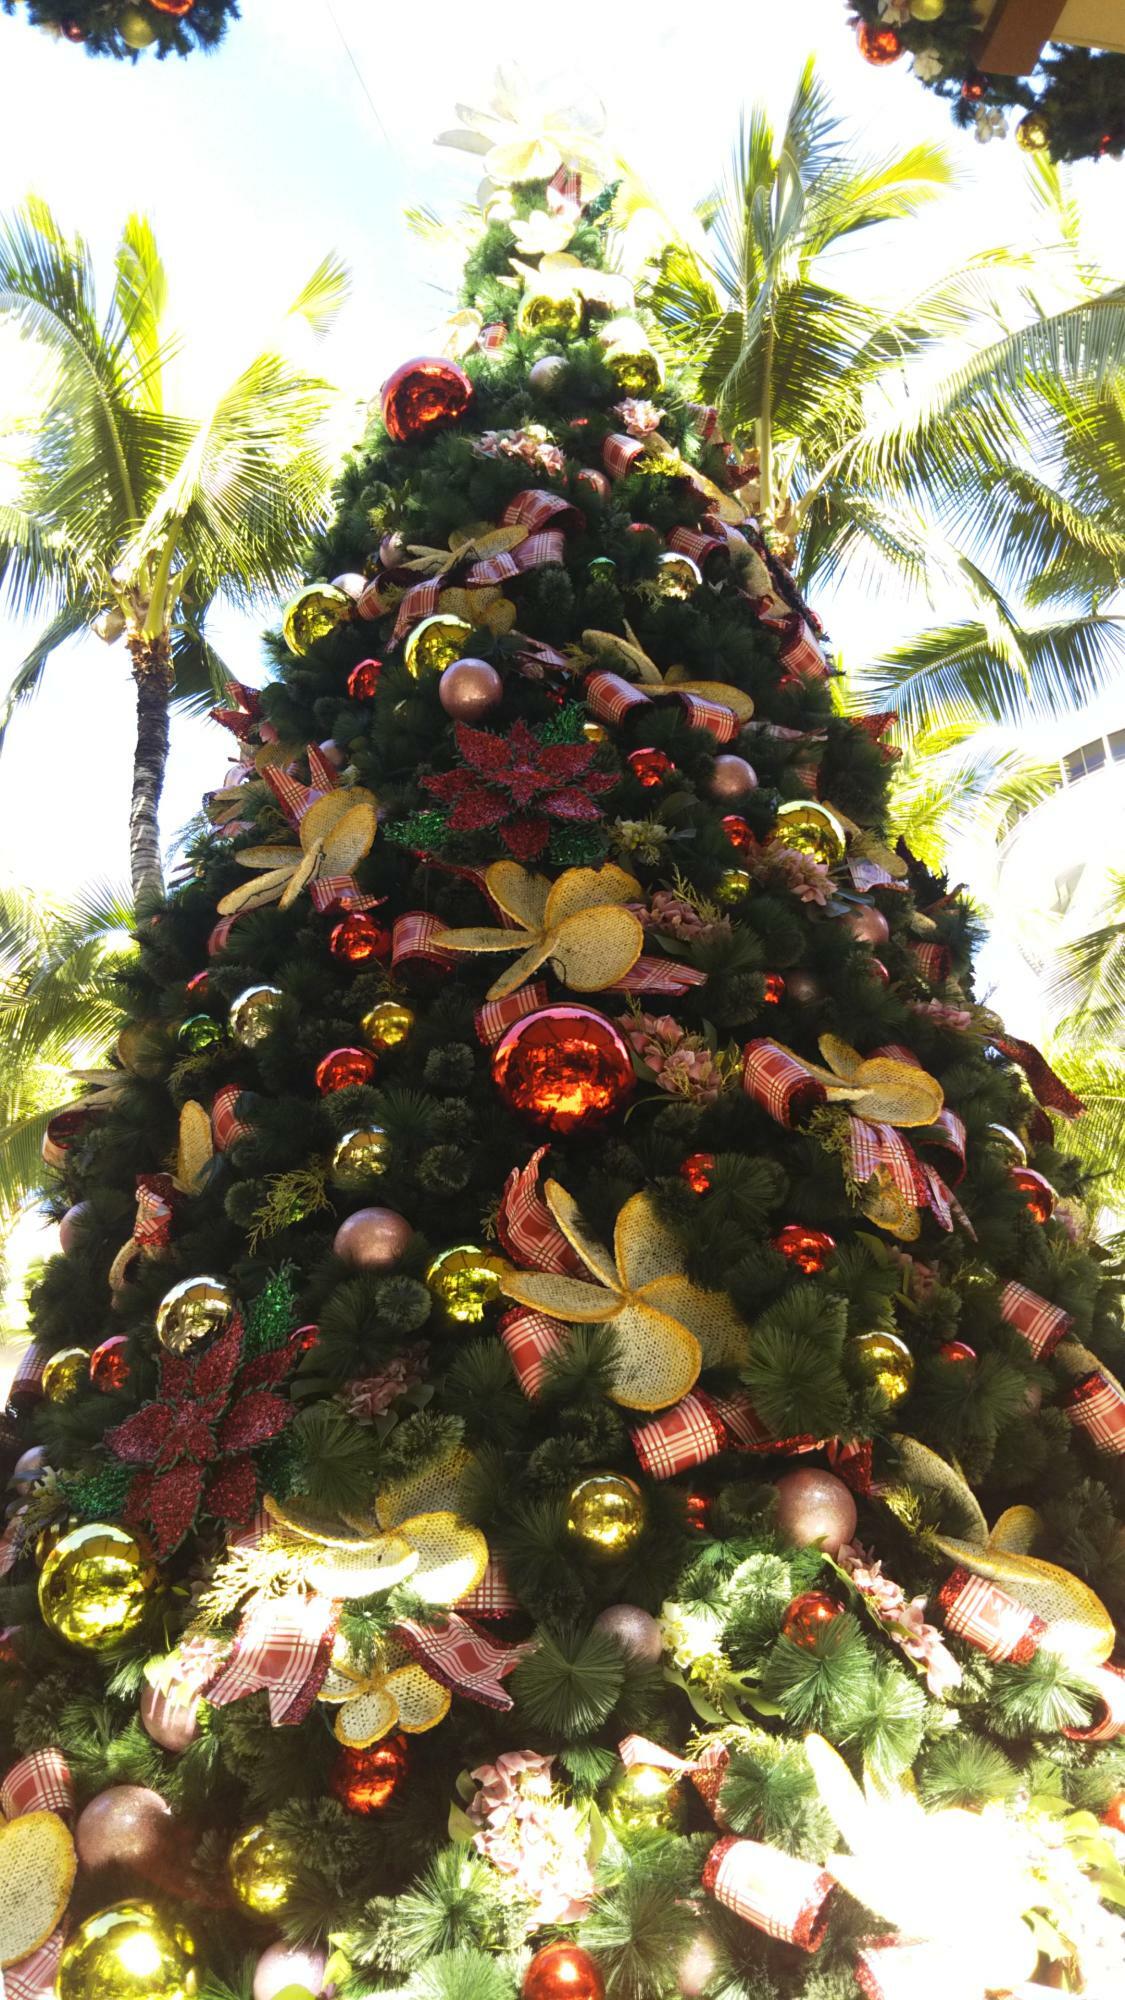 ハワイ州オアフ島内の大型商業施設「ロイヤルハワイアンセンター」では、当施設前に大きなクリスマスツリーが飾られる。その輝きは年を超えても健在であり、お正月を迎えても楽しめる（2018年筆者撮影）。